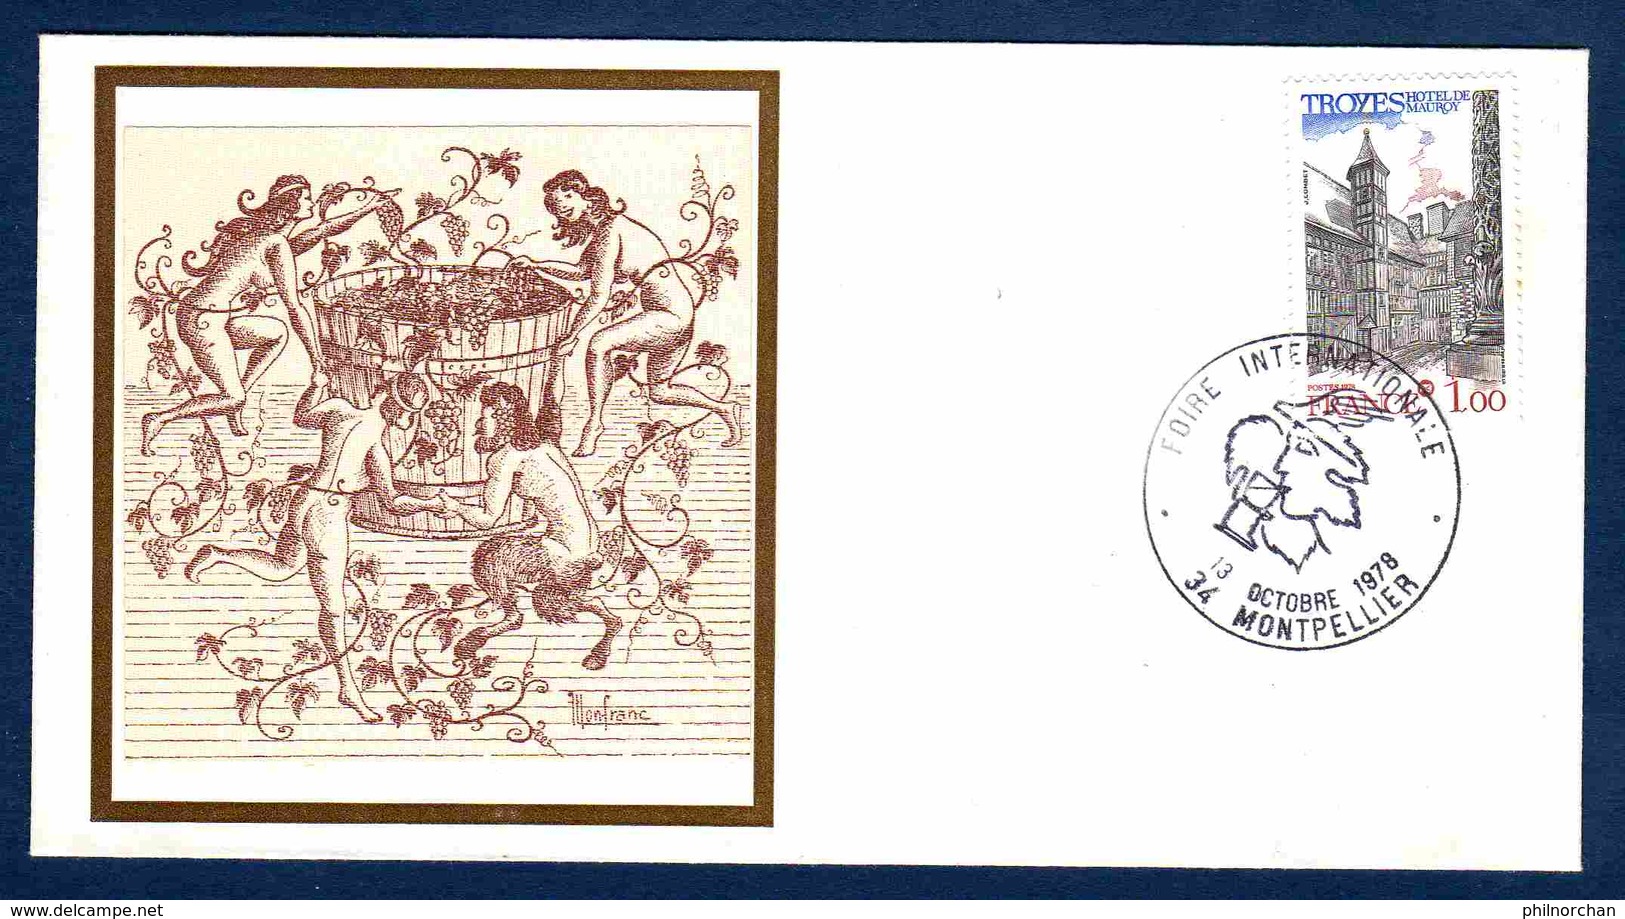 France Marcophilie 1978 Montpellier 13 Octobre 1978 "Foire Internationale De La Vigne Et Du Vin"  TB  1 € (2 Enveloppes) - Commemorative Postmarks